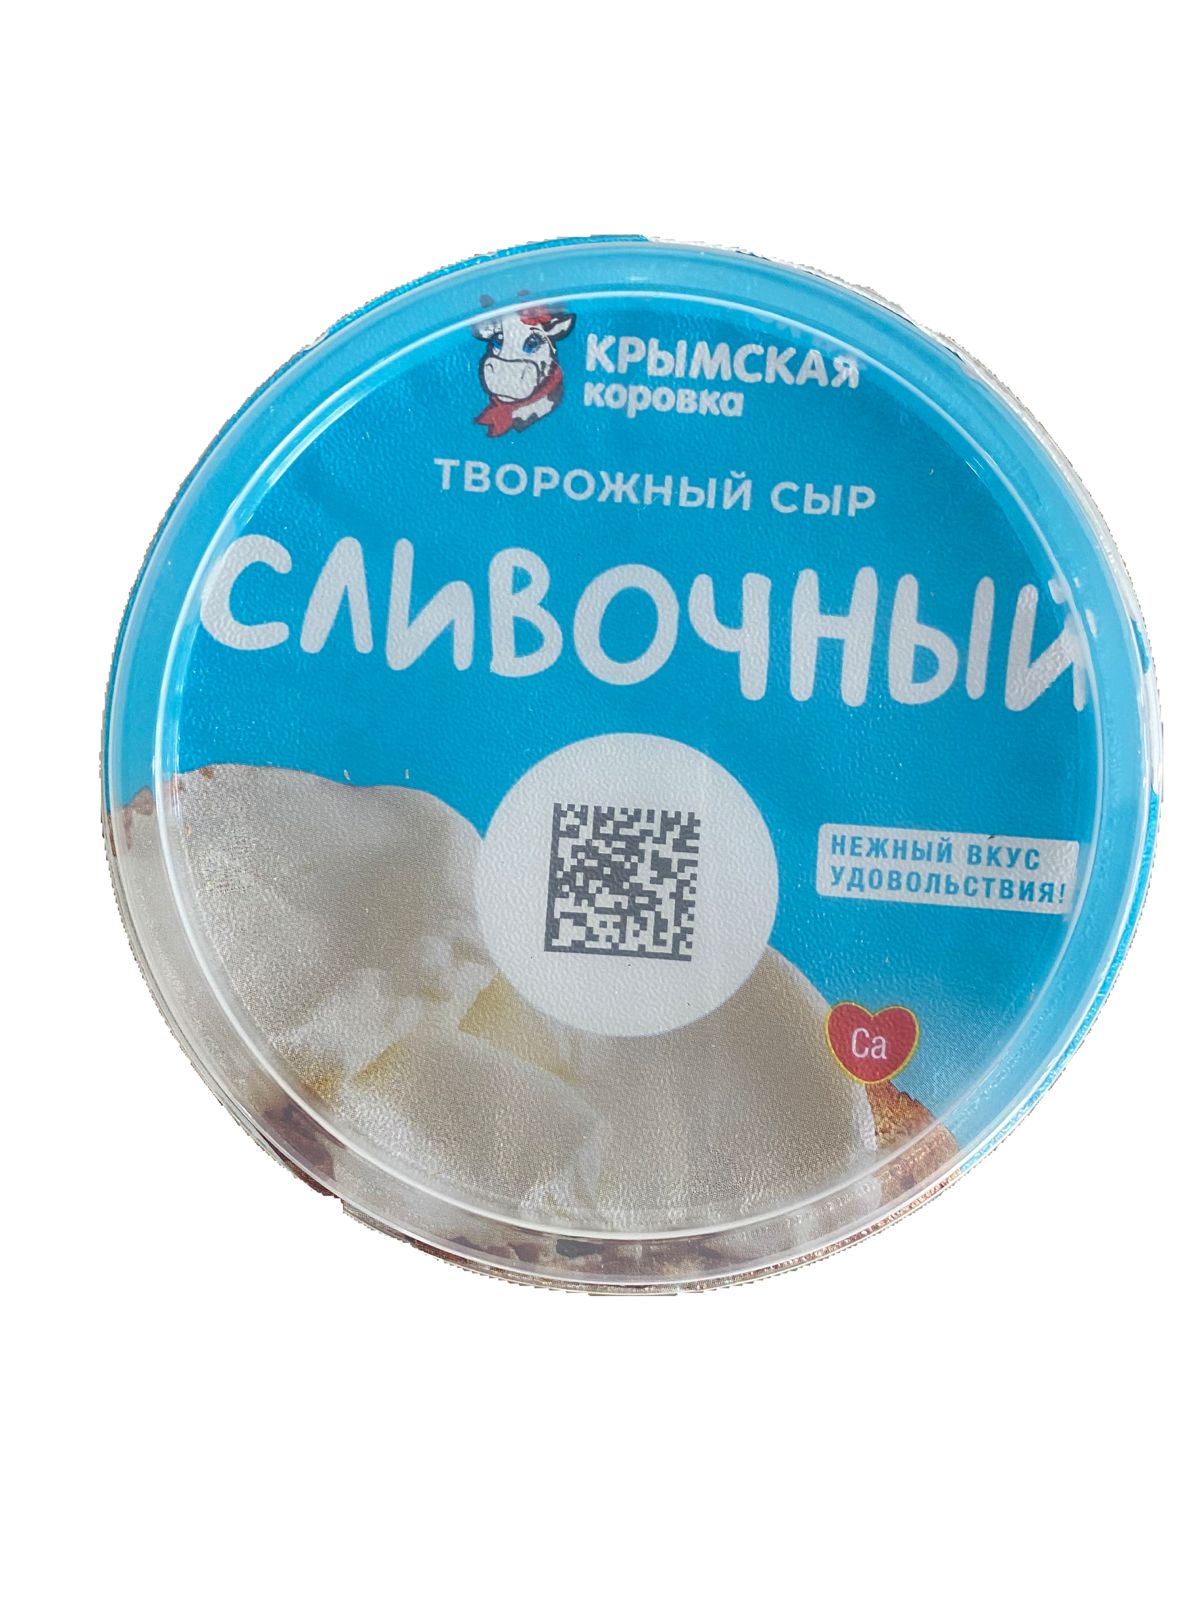 Сыр творожный сливочный, 55%, фас.140гр., ТМ "Крымская Коровка"